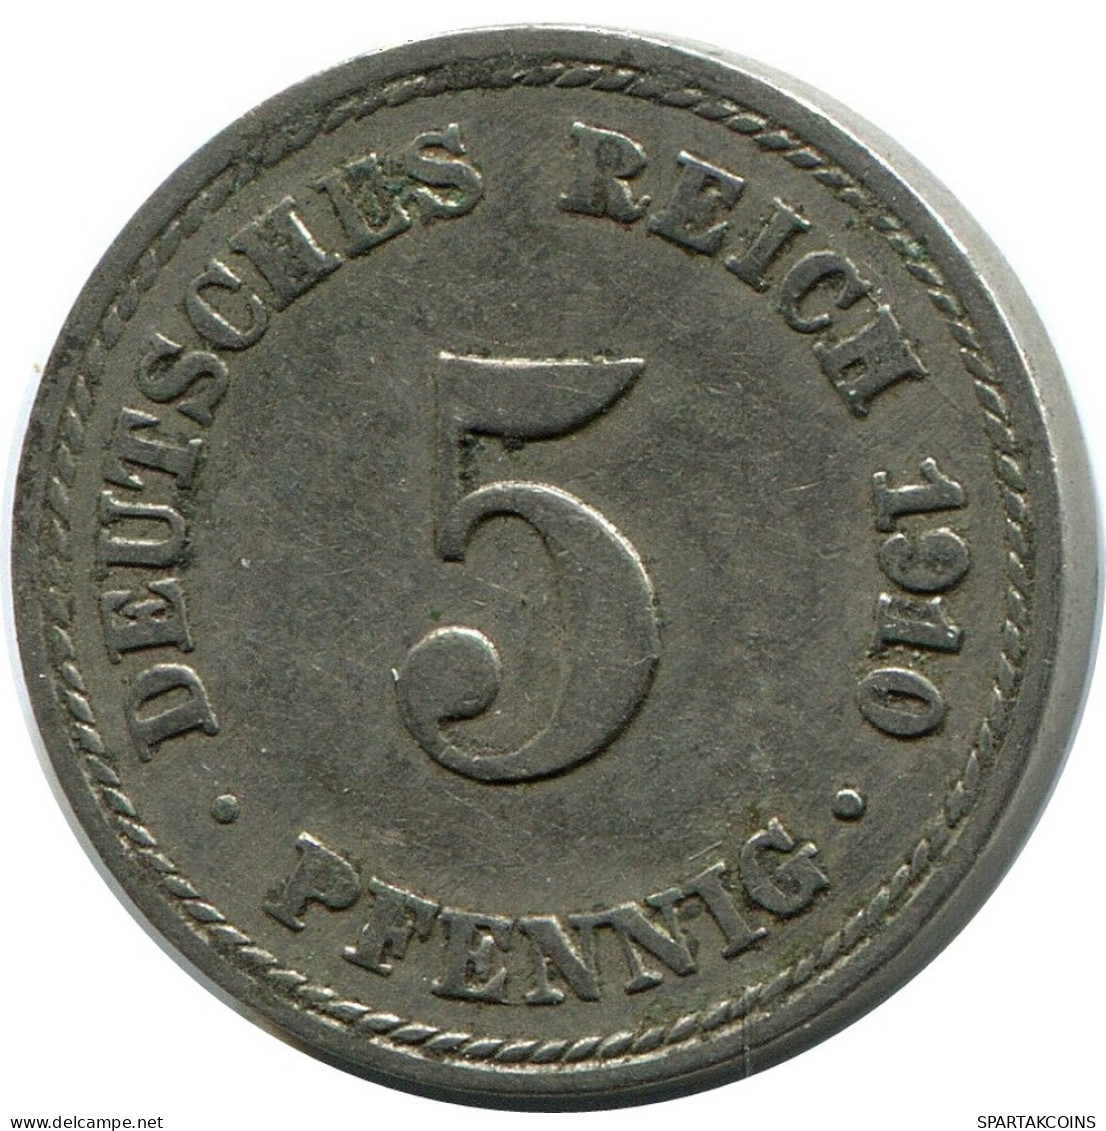 5 PFENNIG 1910 A GERMANY Coin #DB195.U.A - 5 Pfennig